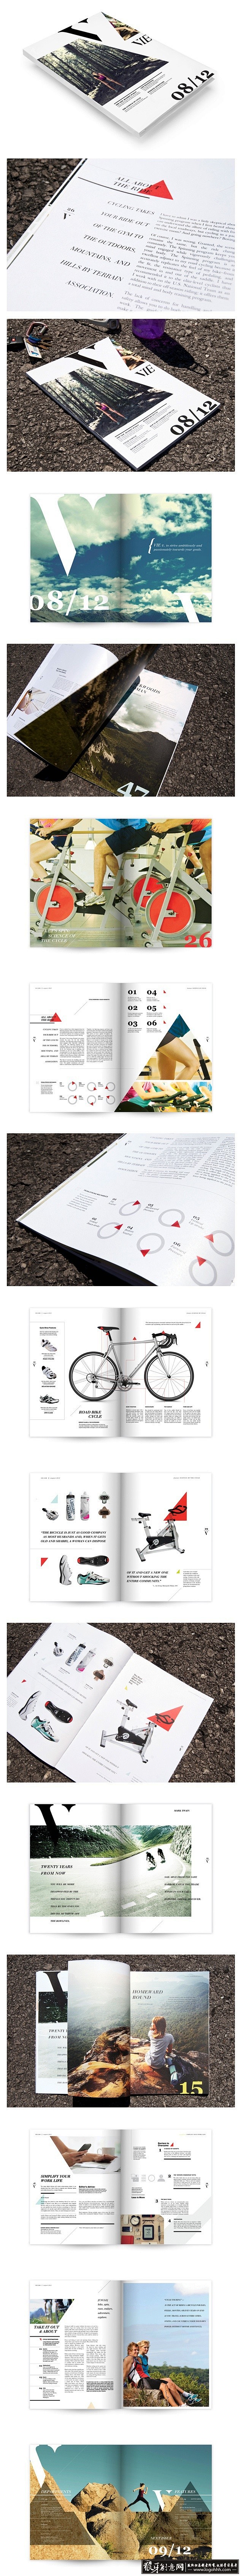 [创意画册] 企业品牌形象画册设计展示,...